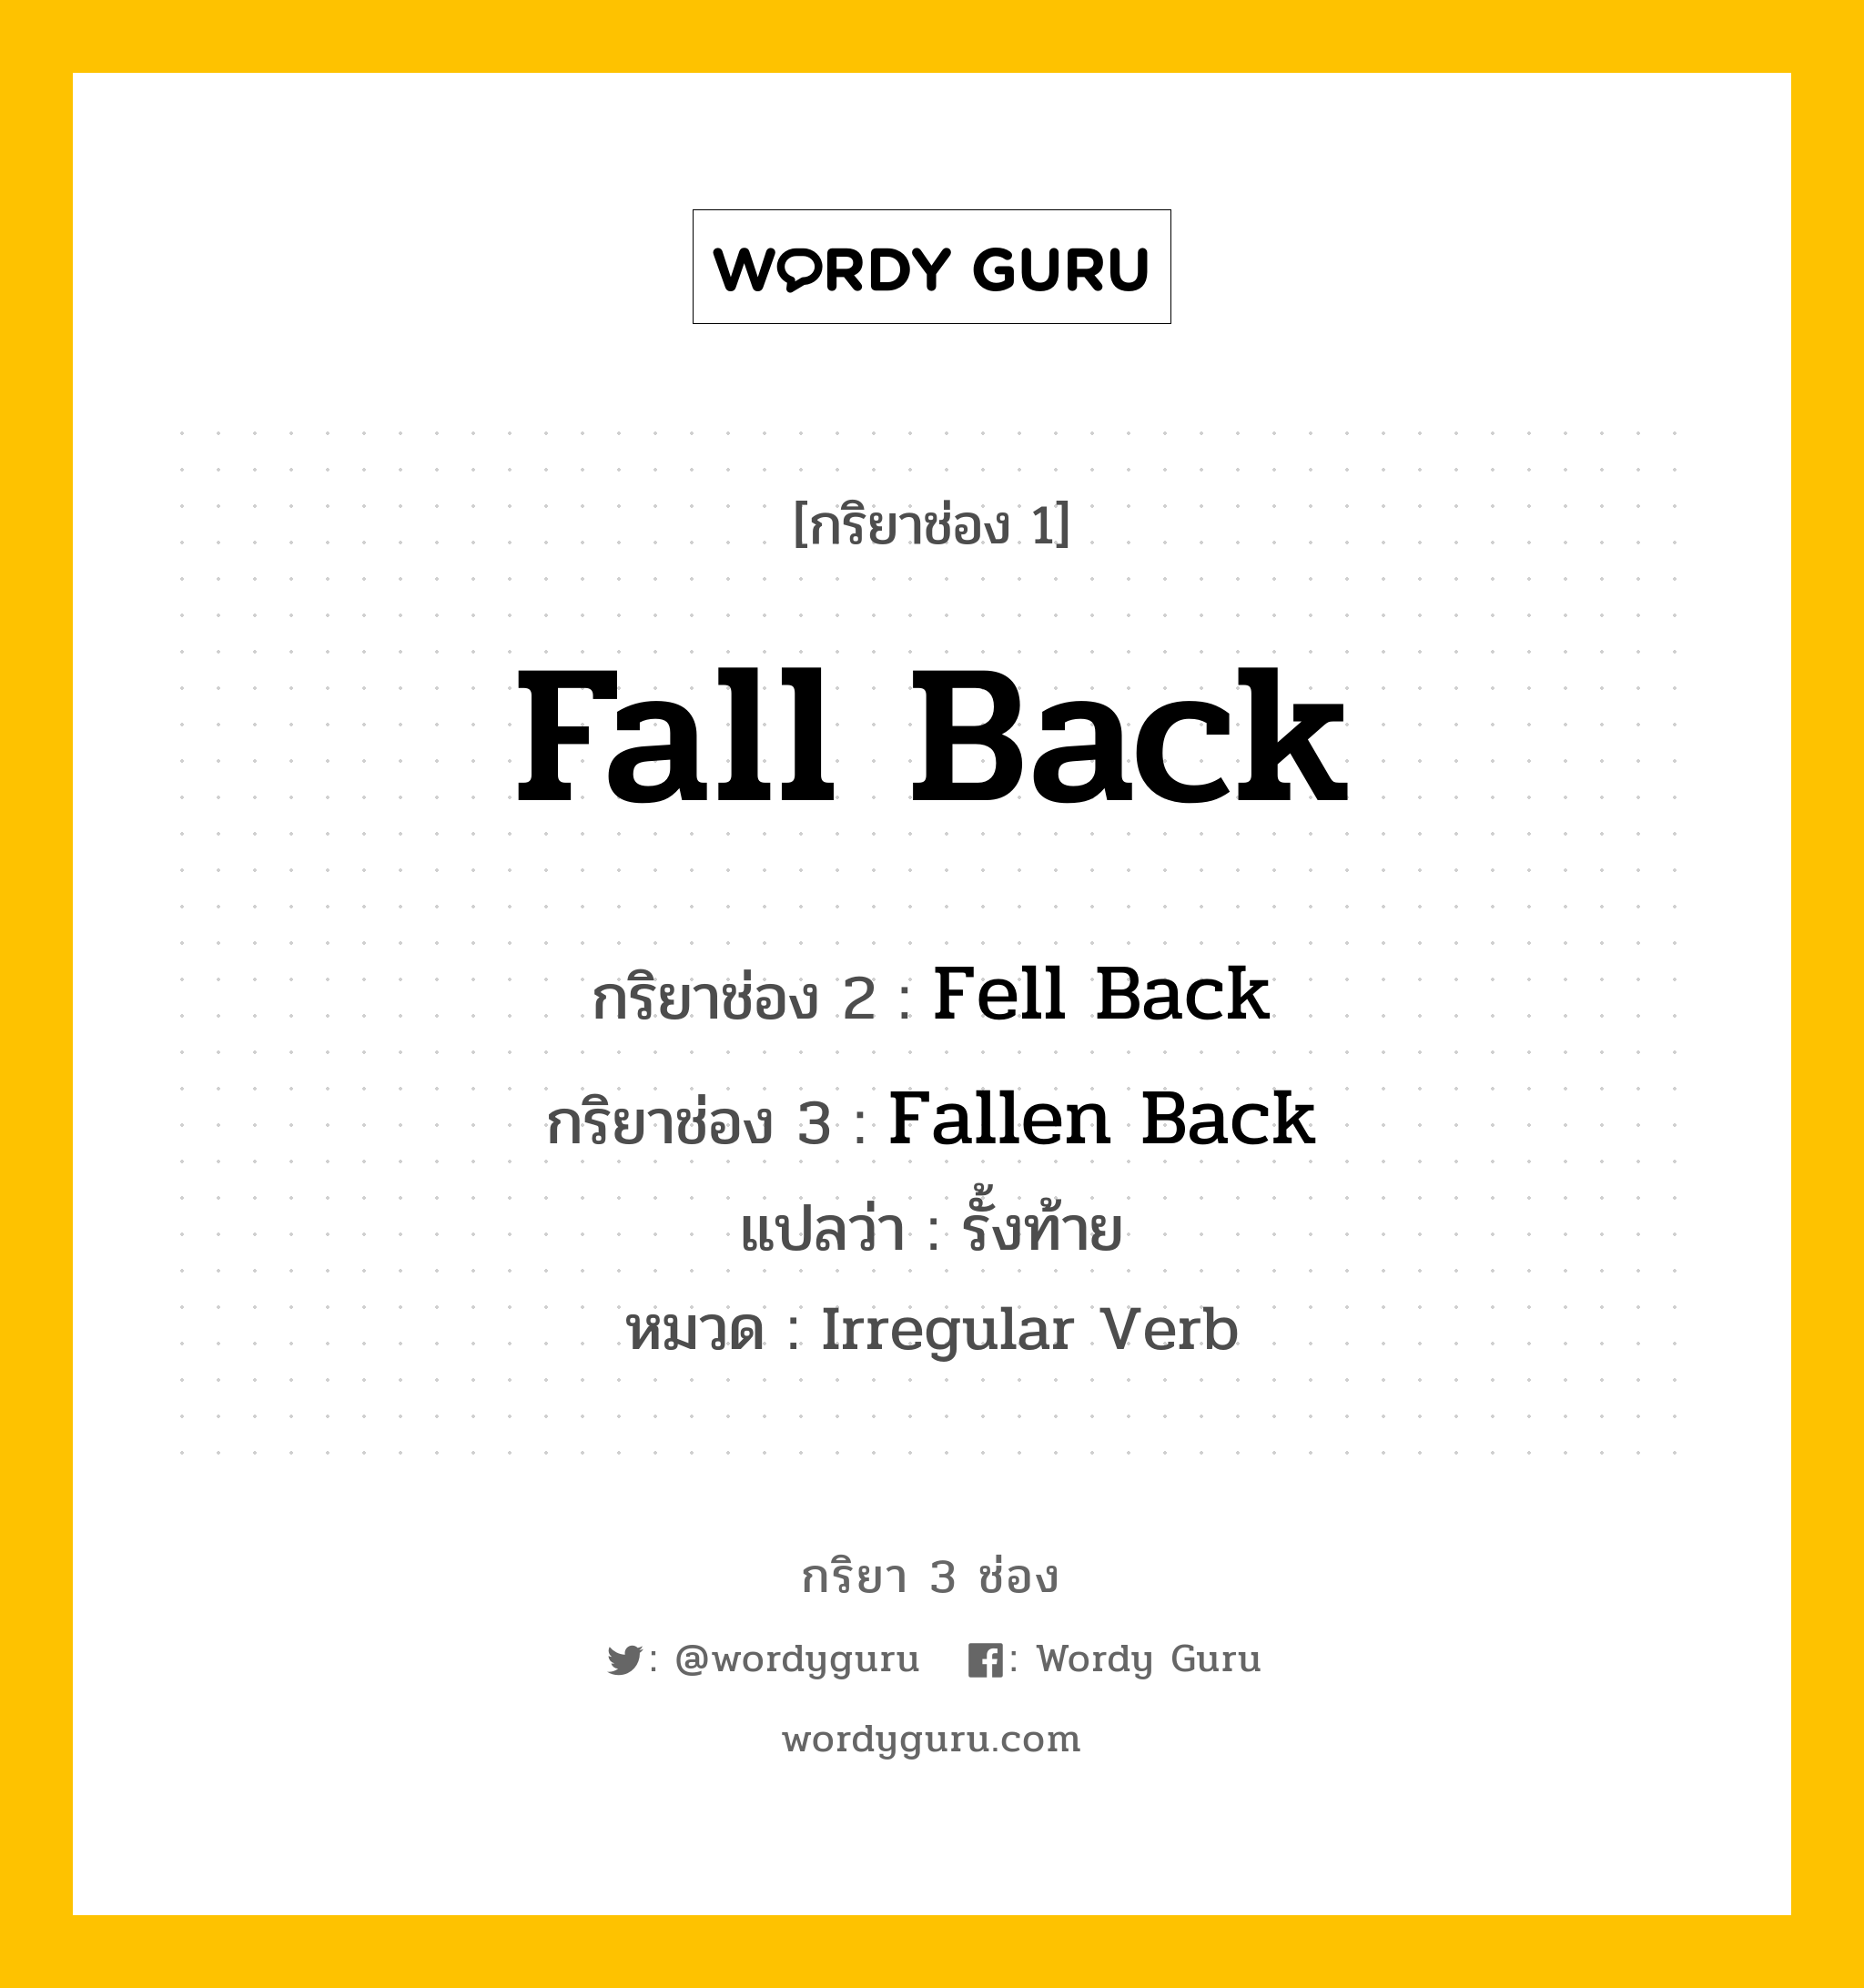 กริยา 3 ช่อง: Fall Back ช่อง 2 Fall Back ช่อง 3 คืออะไร, กริยาช่อง 1 Fall Back กริยาช่อง 2 Fell Back กริยาช่อง 3 Fallen Back แปลว่า รั้งท้าย หมวด Irregular Verb หมวด Irregular Verb